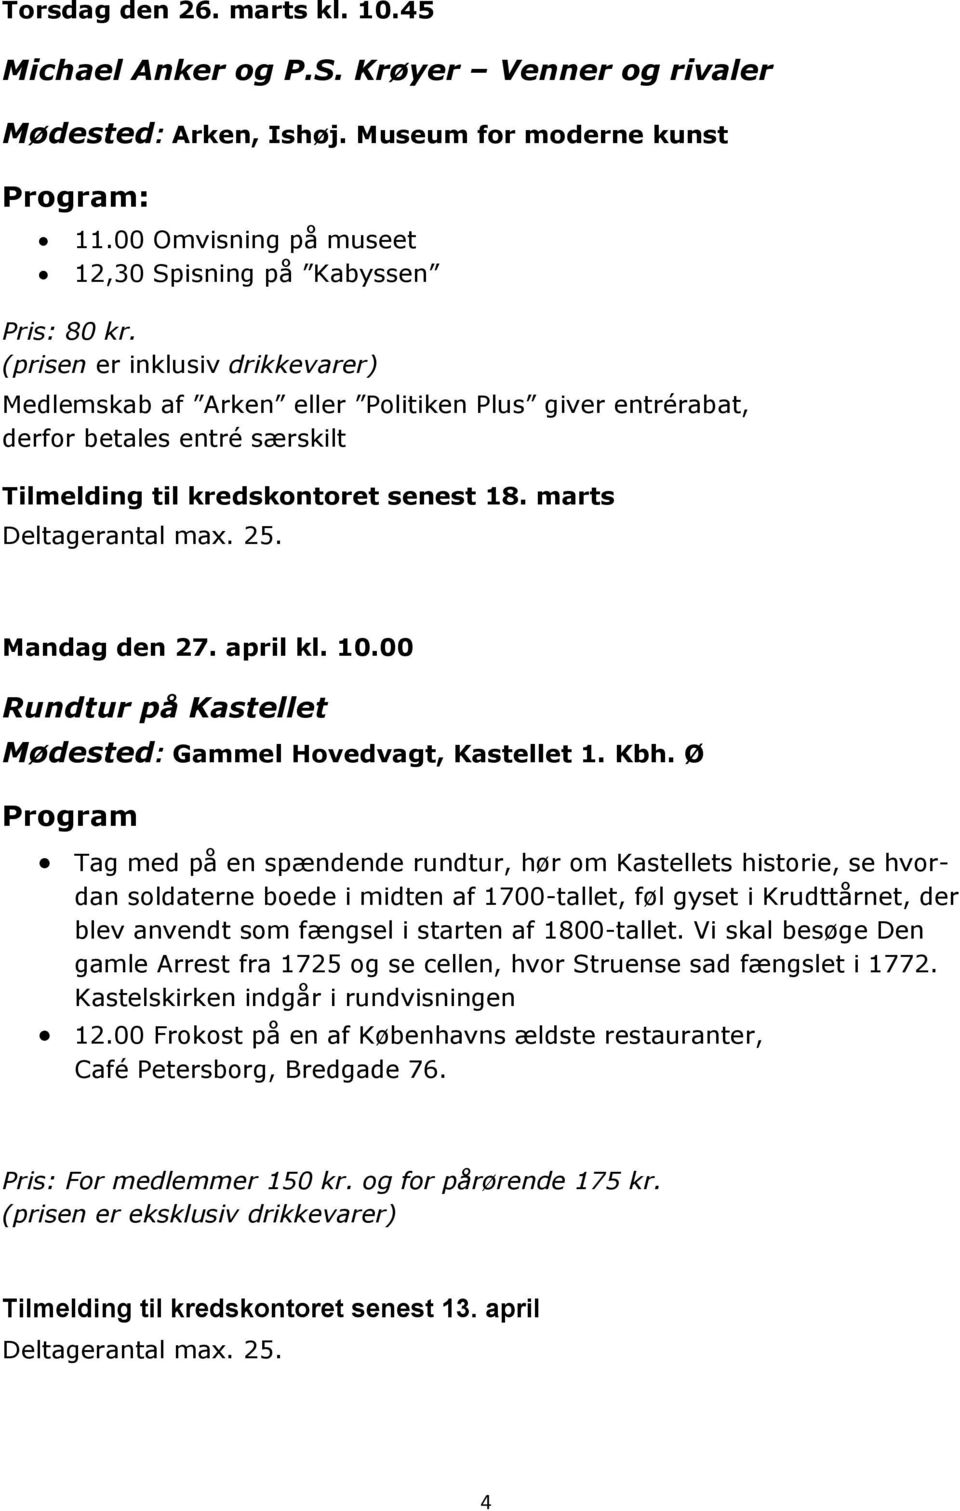 Mandag den 27. april kl. 10.00 Rundtur på Kastellet Mødested: Gammel Hovedvagt, Kastellet 1. Kbh.